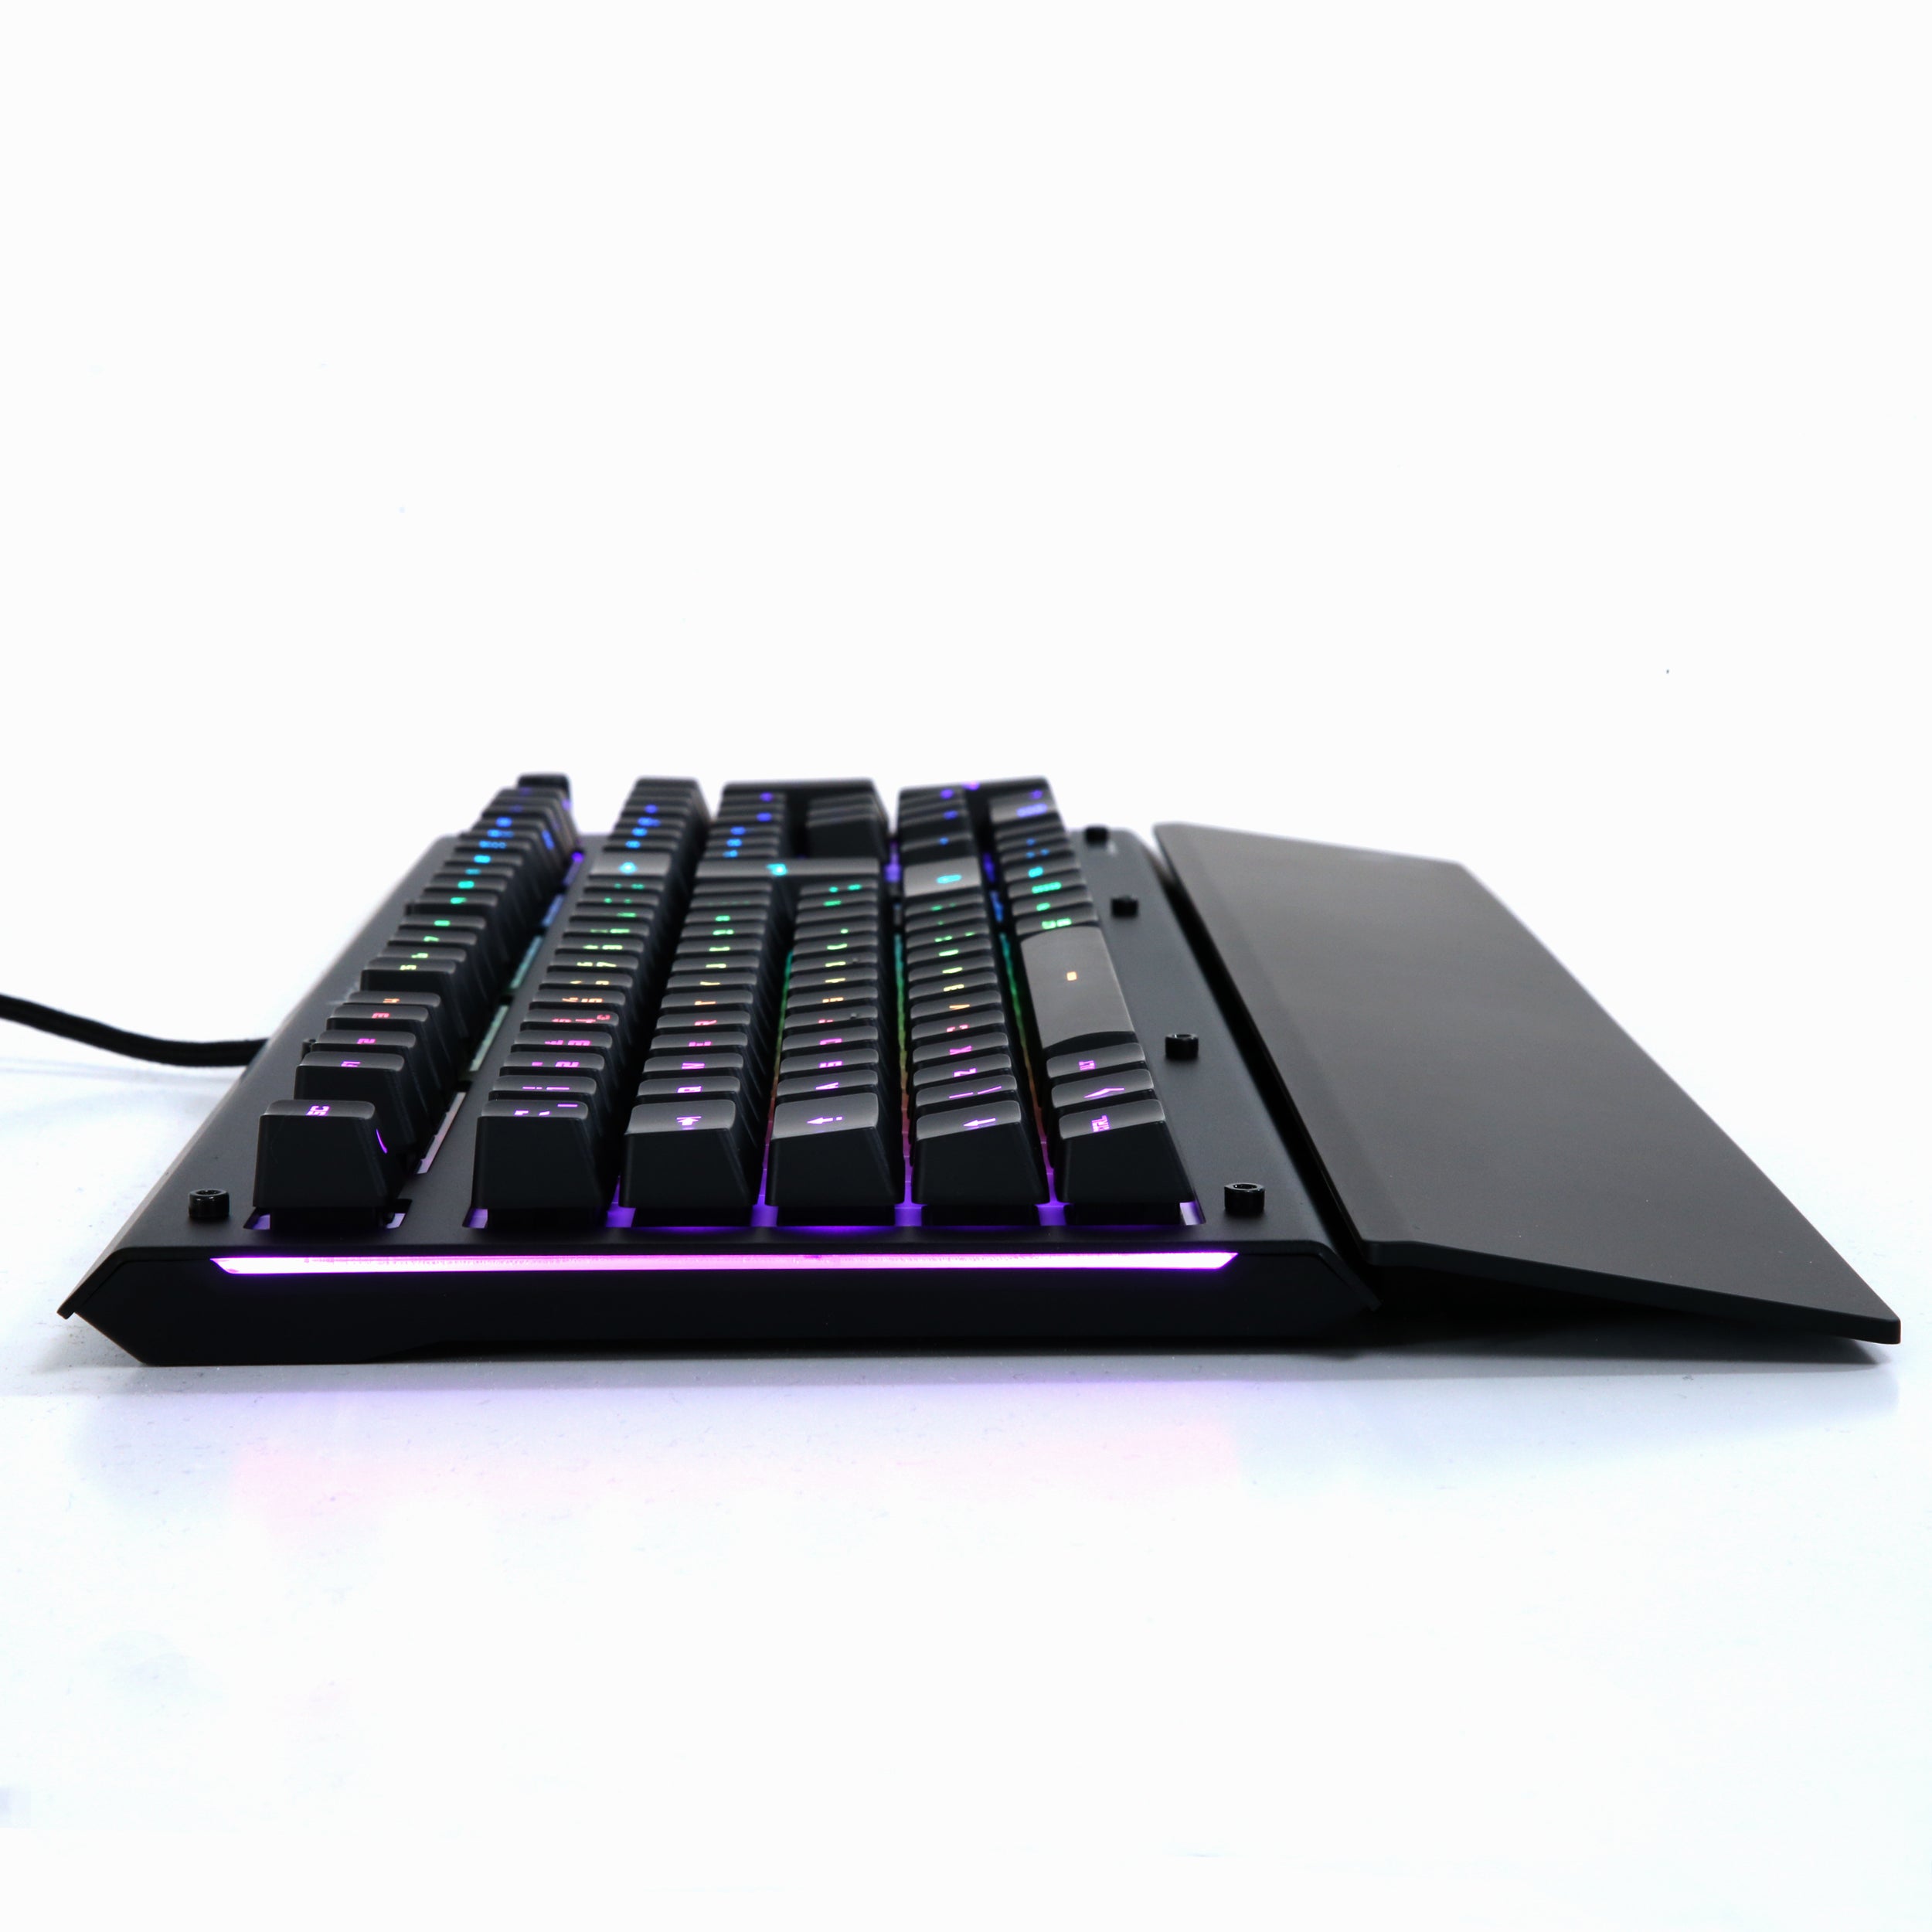 Das Keyboard X50Q